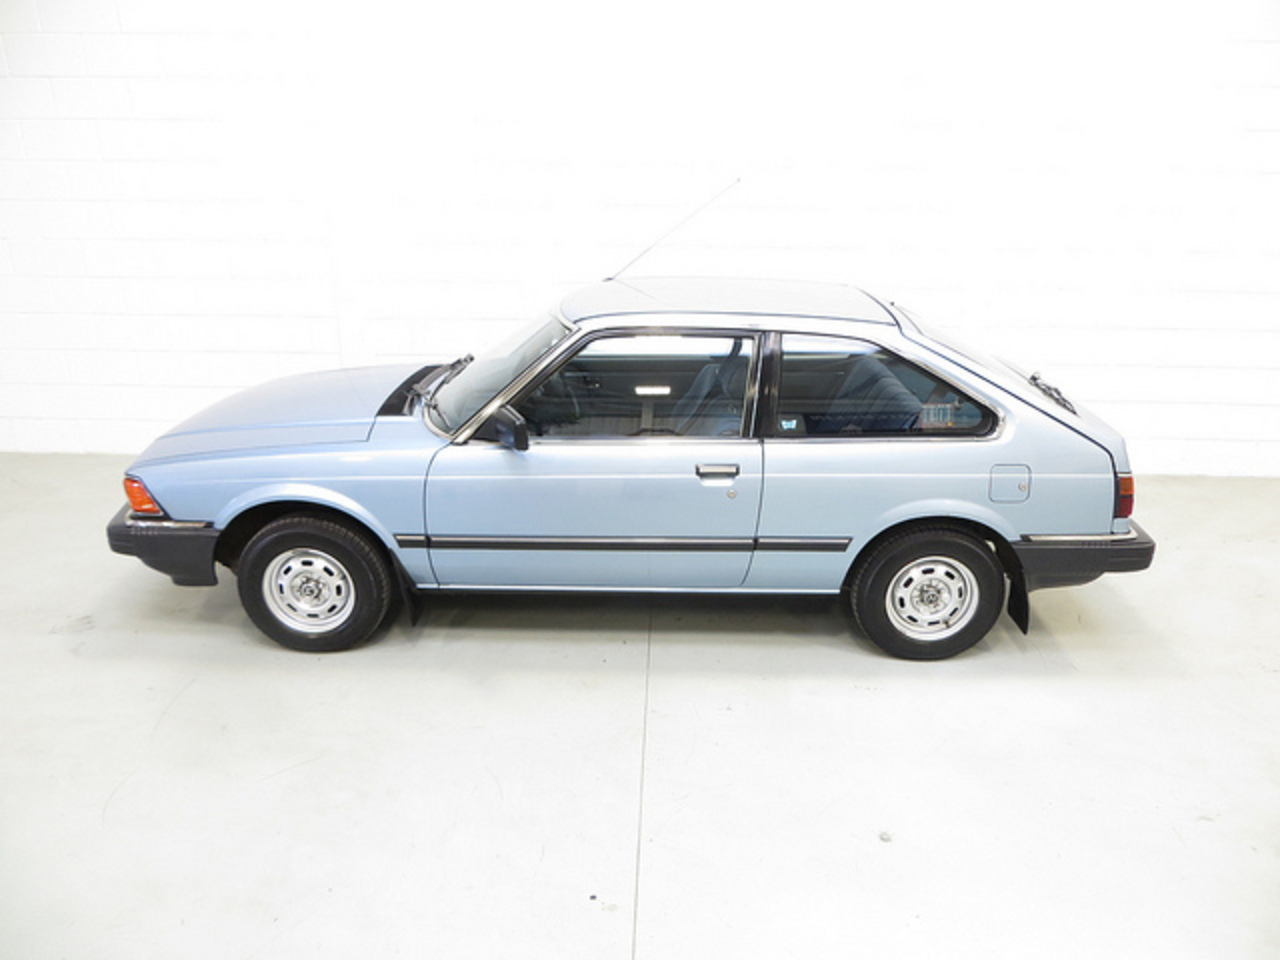 Honda Accord DX Auto 1983 / Flickr - Partage de photos!